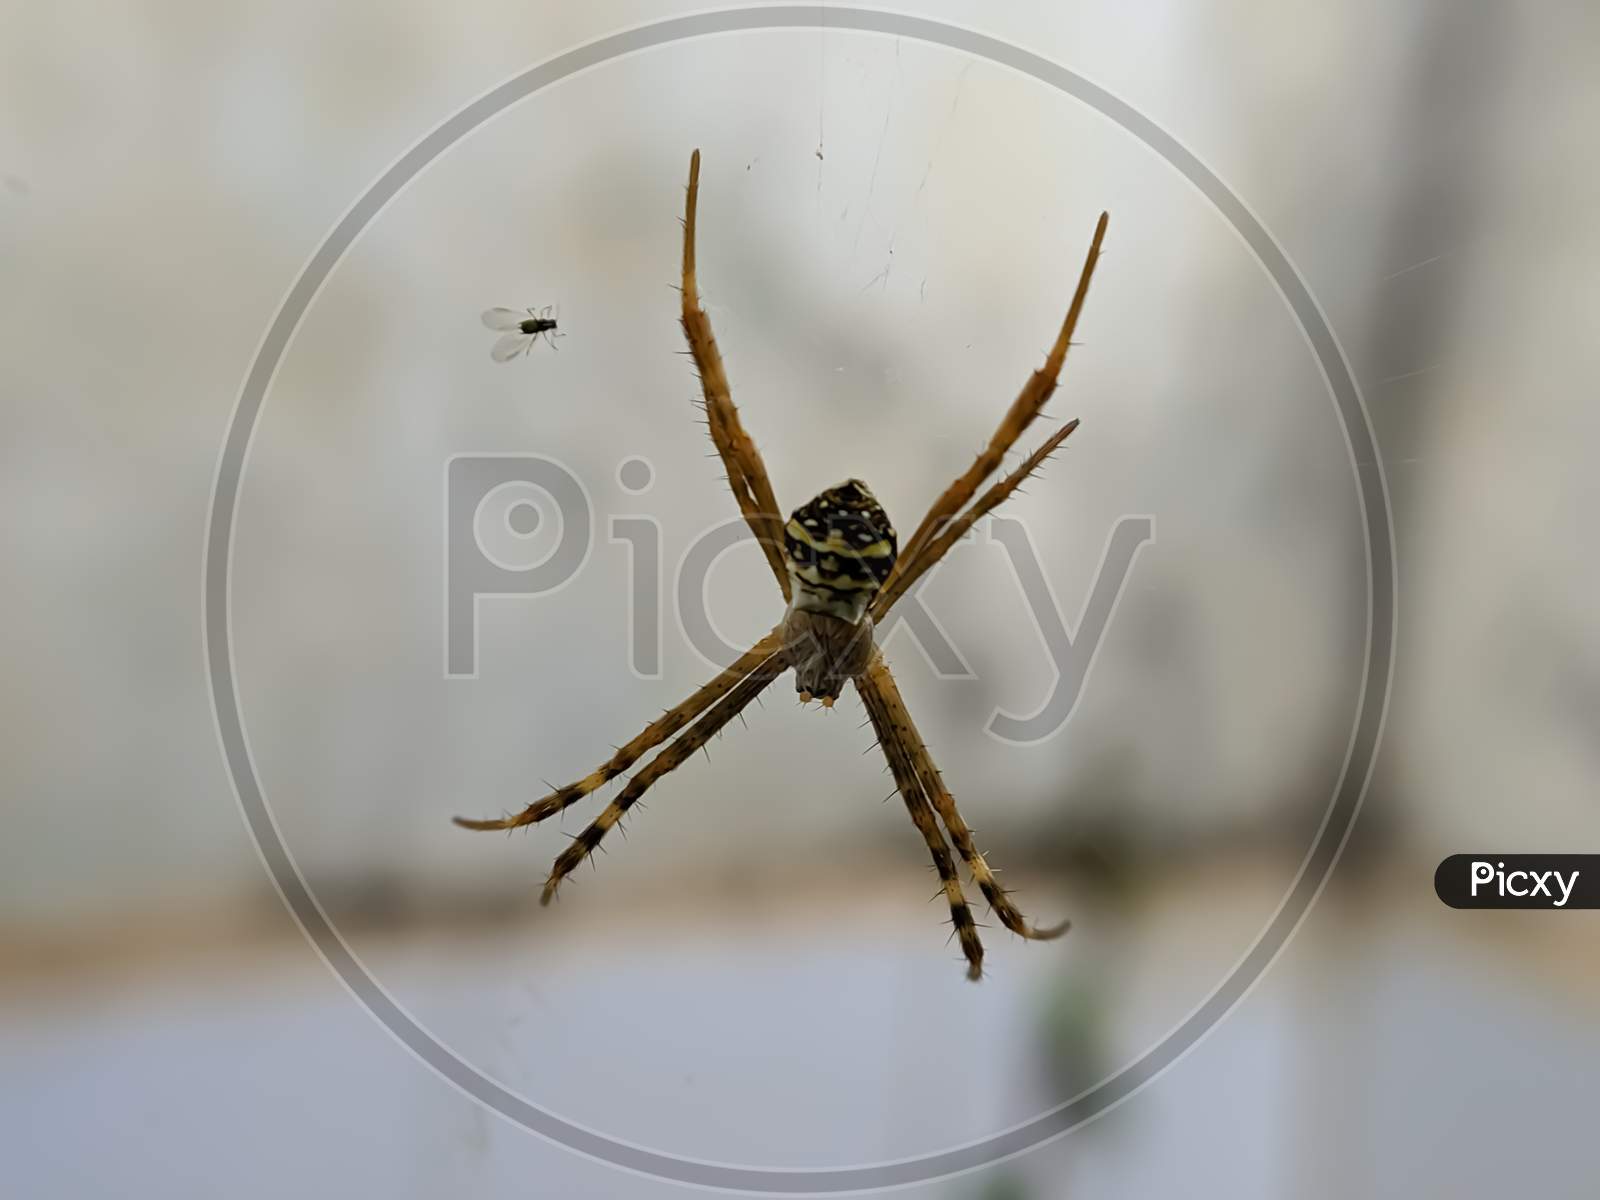 Argiope keyserlingi spider on garden yellow spider